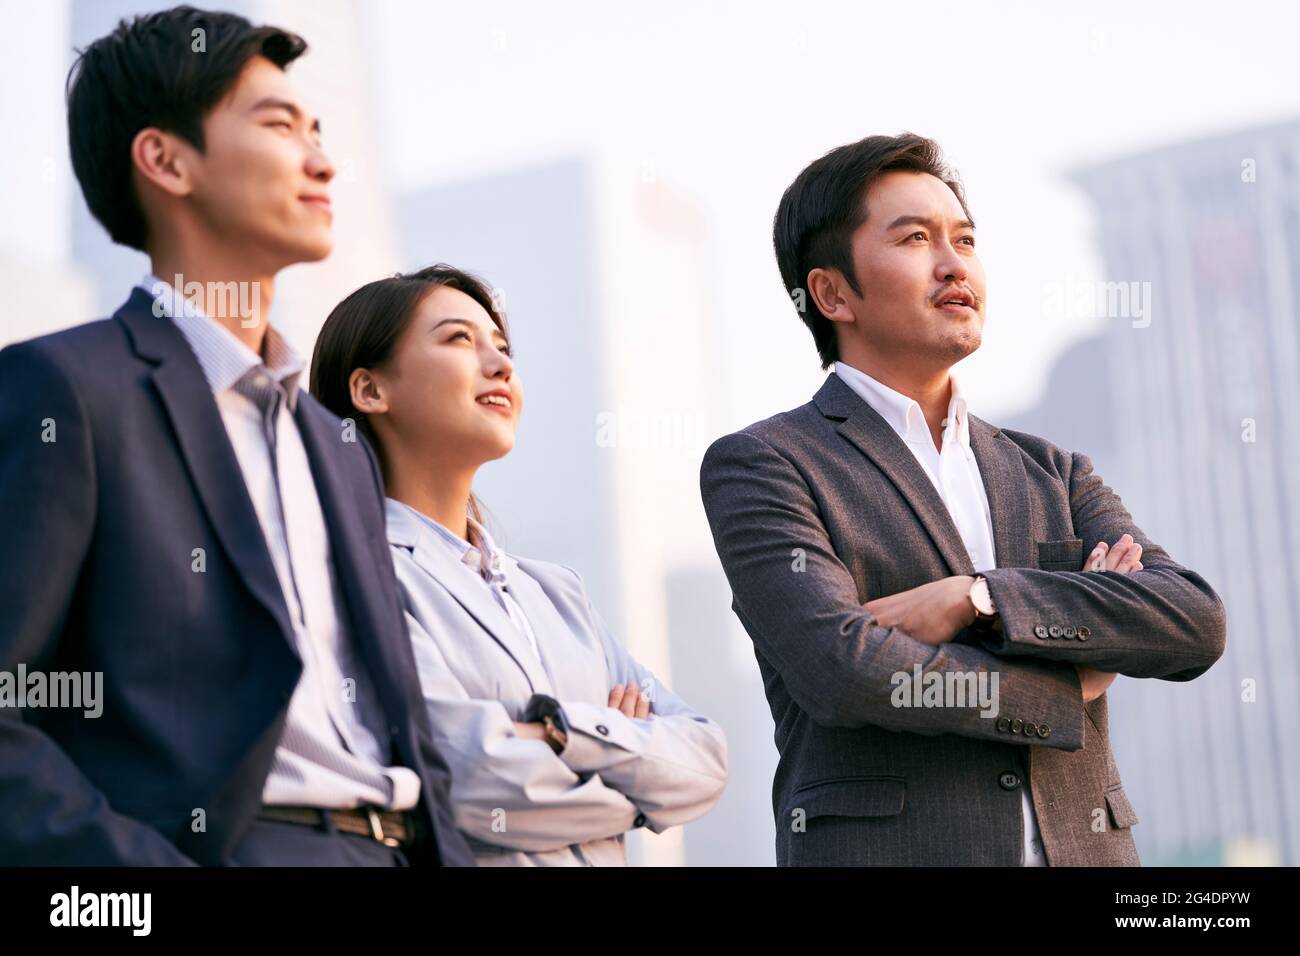 Ein Team aus drei asiatischen Geschäftsleuten, die im Gespräch über Geschäfte im Freien sprechen Stockfoto